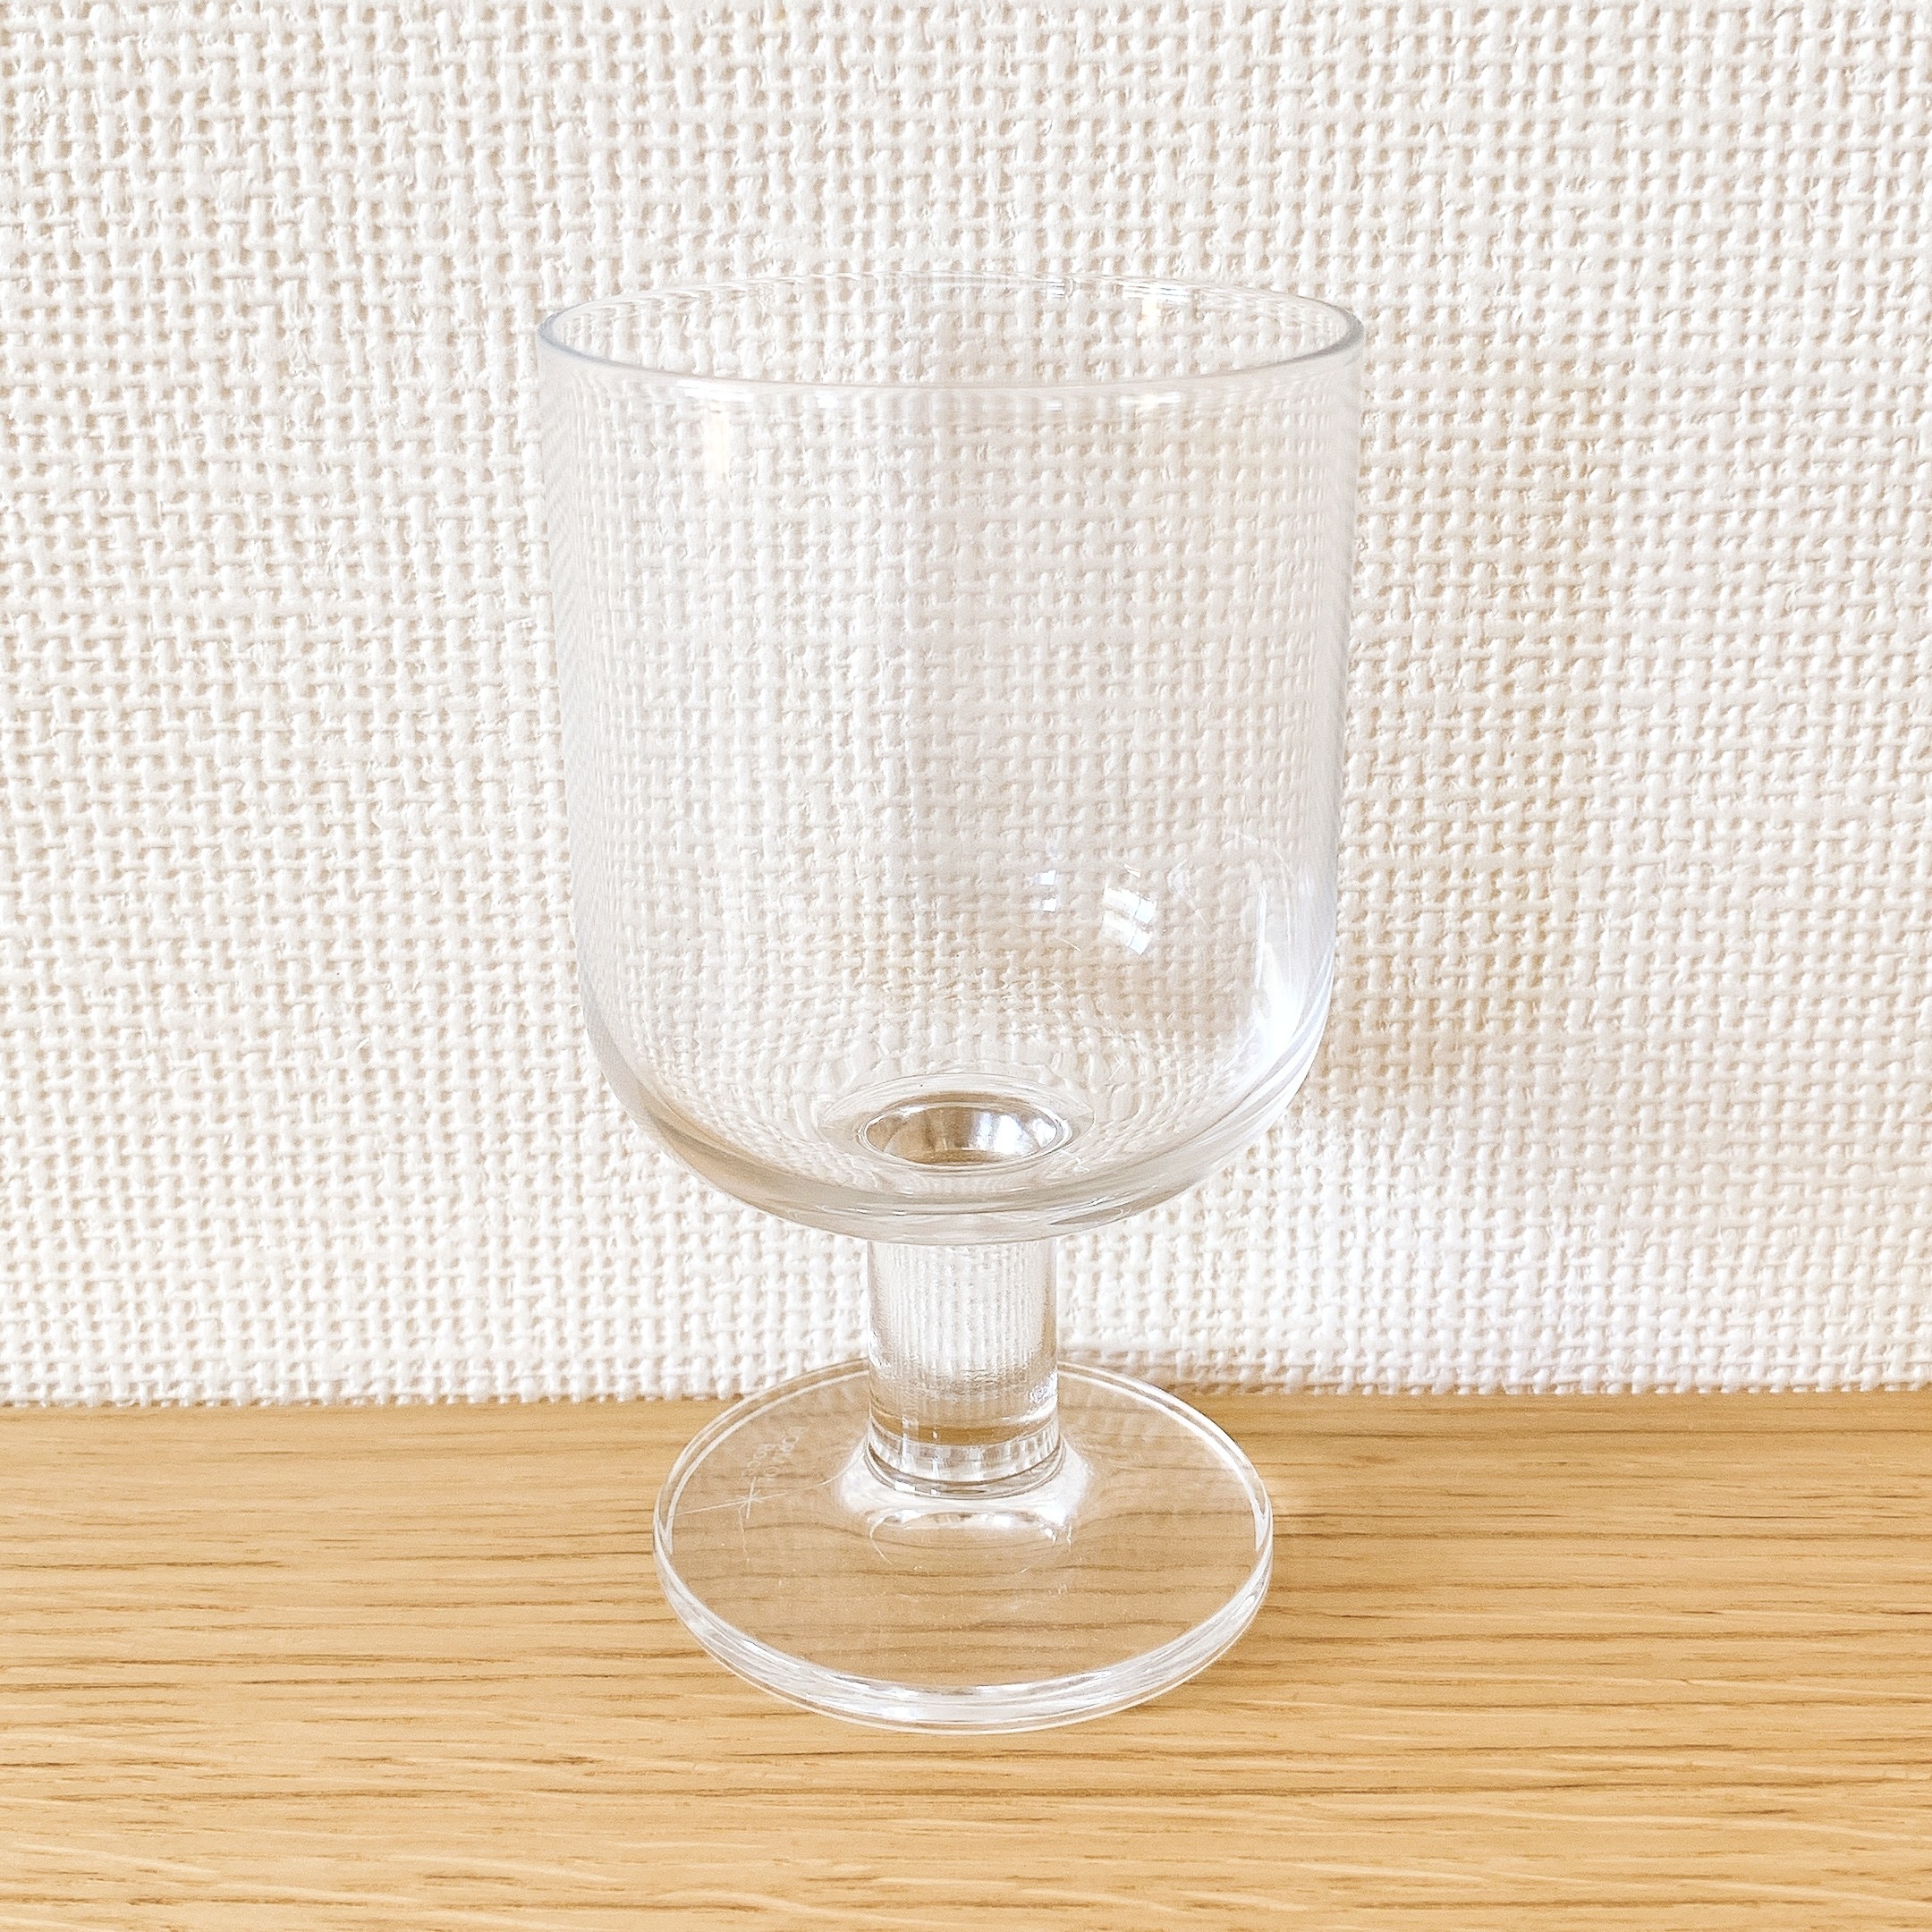 即納特価品 レア クリストフル グラス 日本直営店 正規品本物 ワイングラス 食器